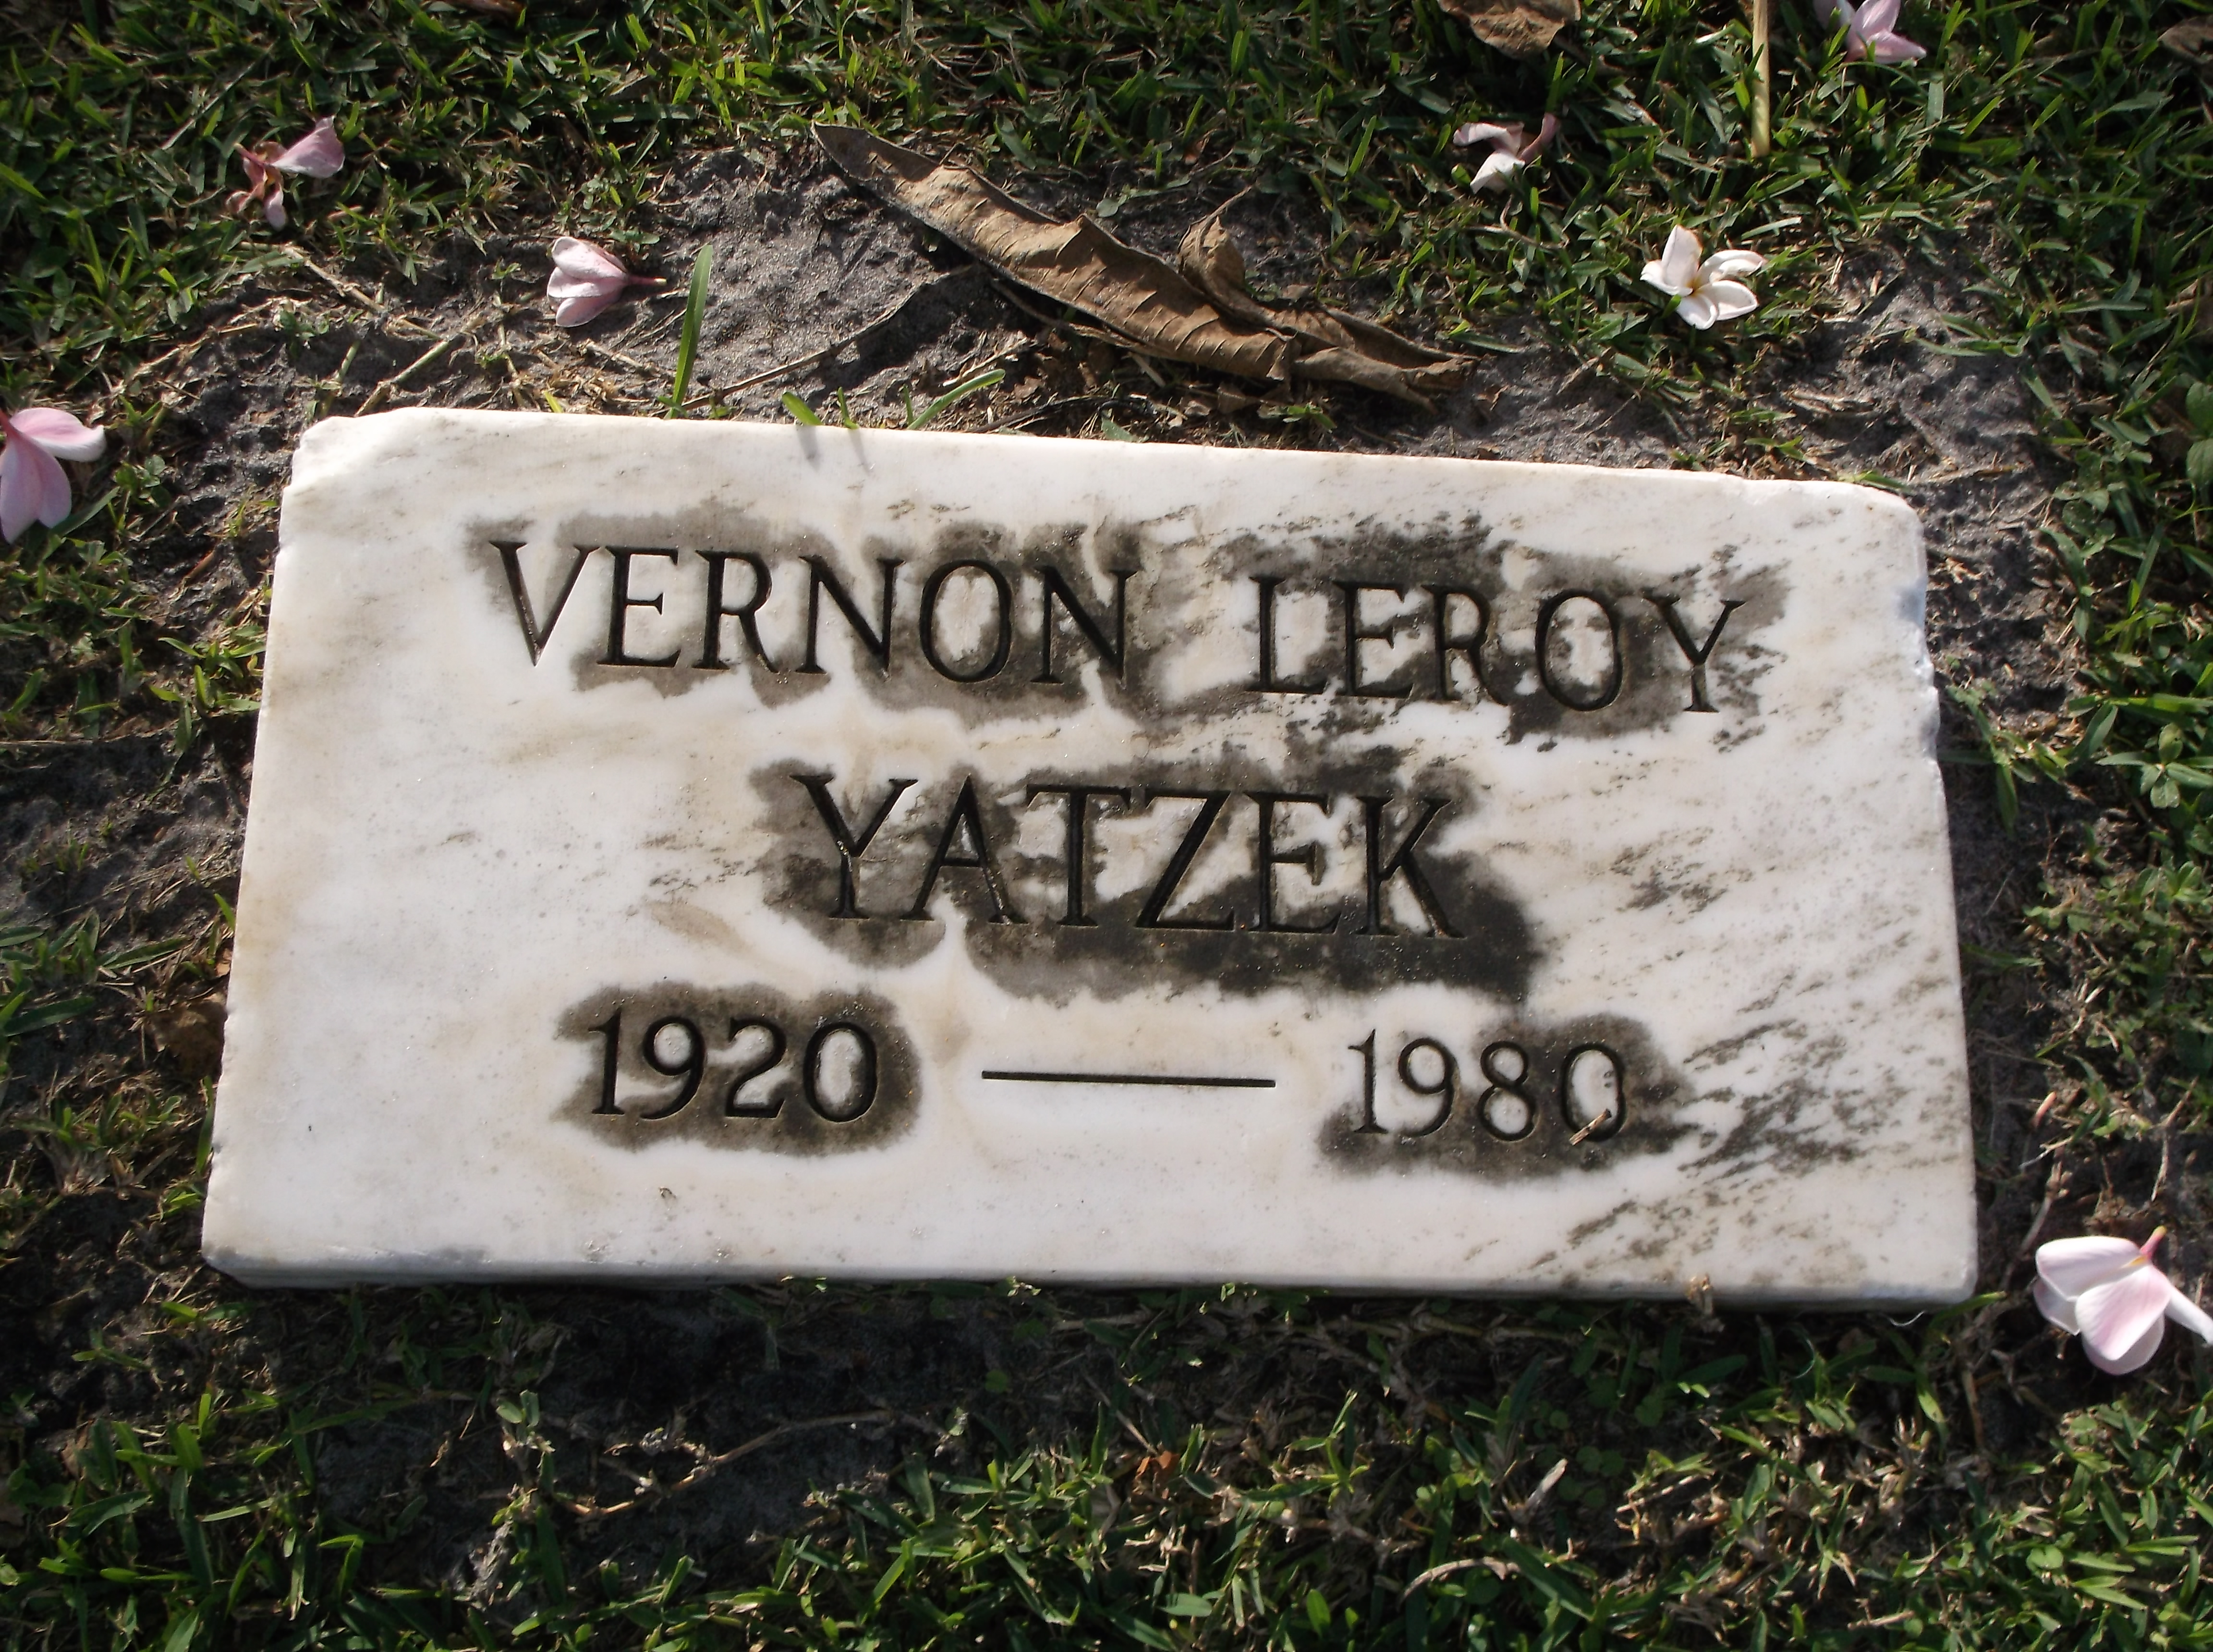 Vernon Leroy Yatzek